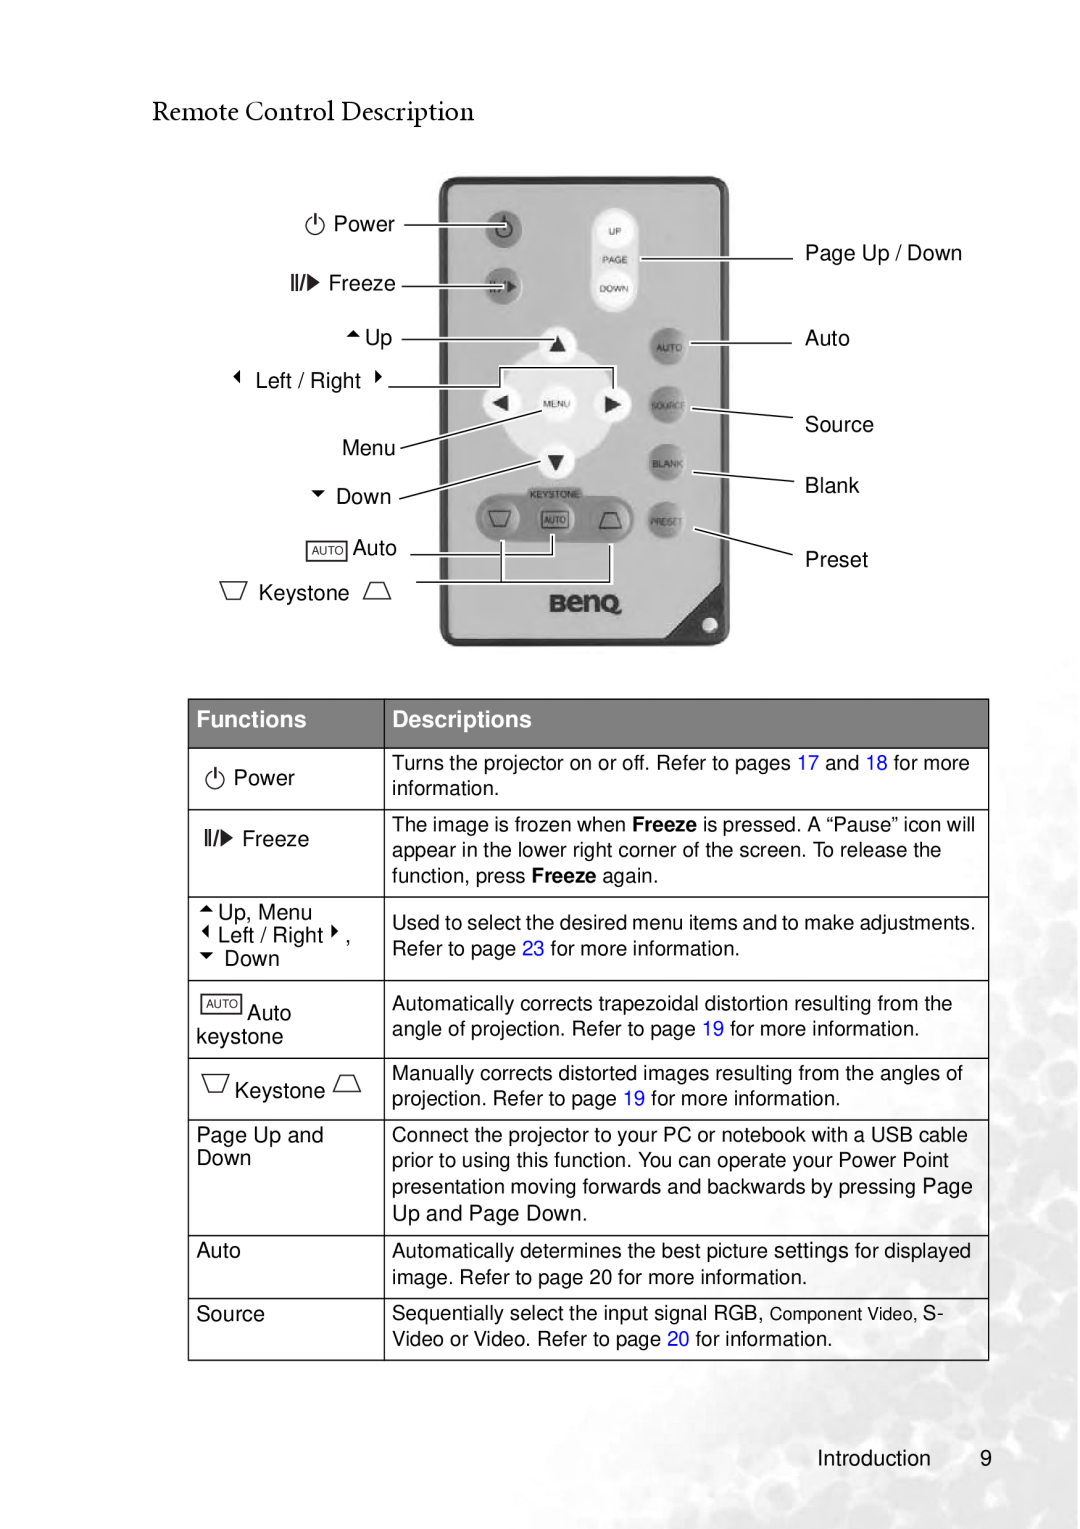 BenQ PB2240 user manual Remote Control Description, Functions, Descriptions 